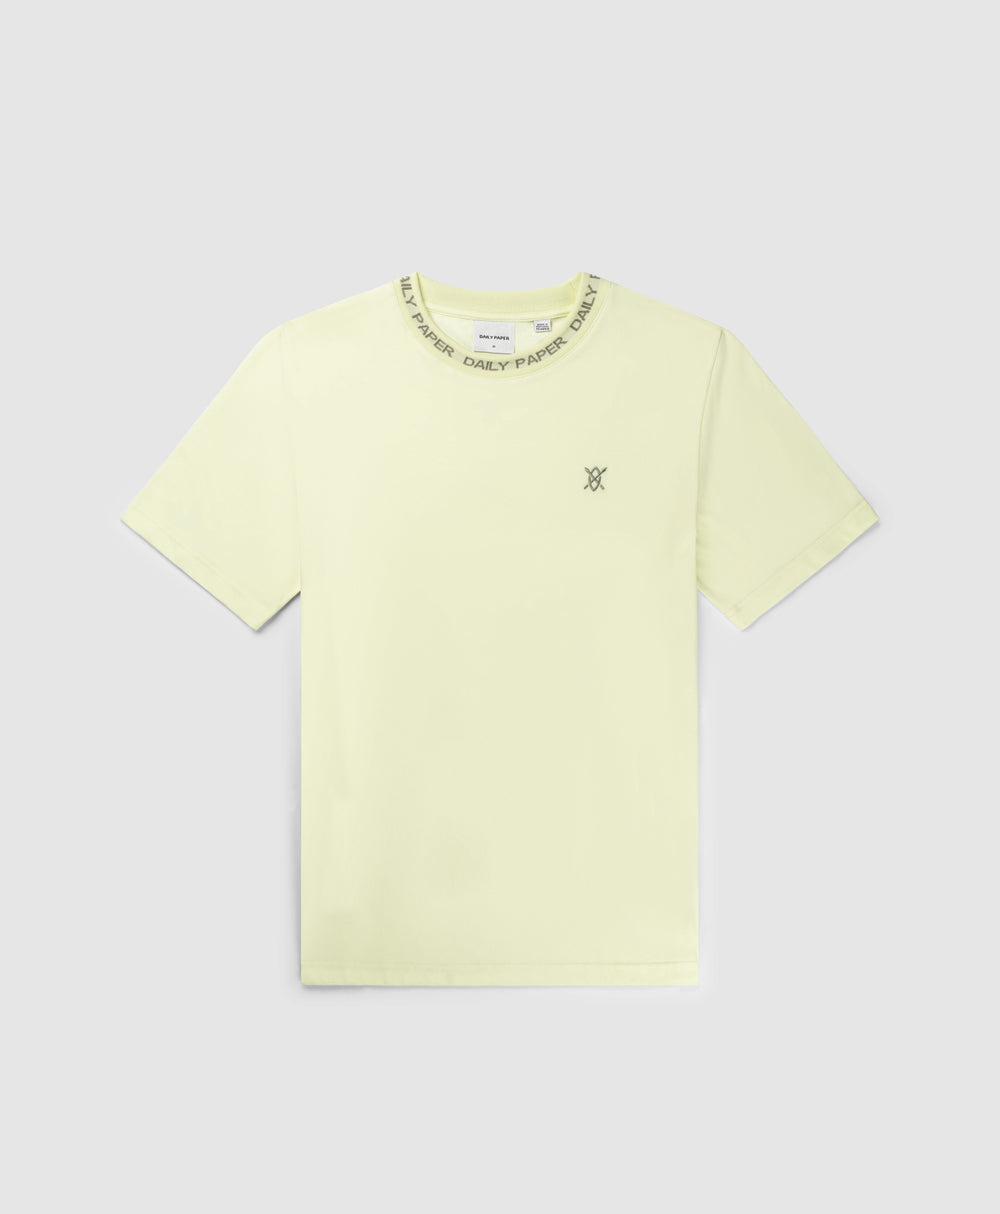 DP - Icing Yellow Erib T-Shirt - Packshot - Front